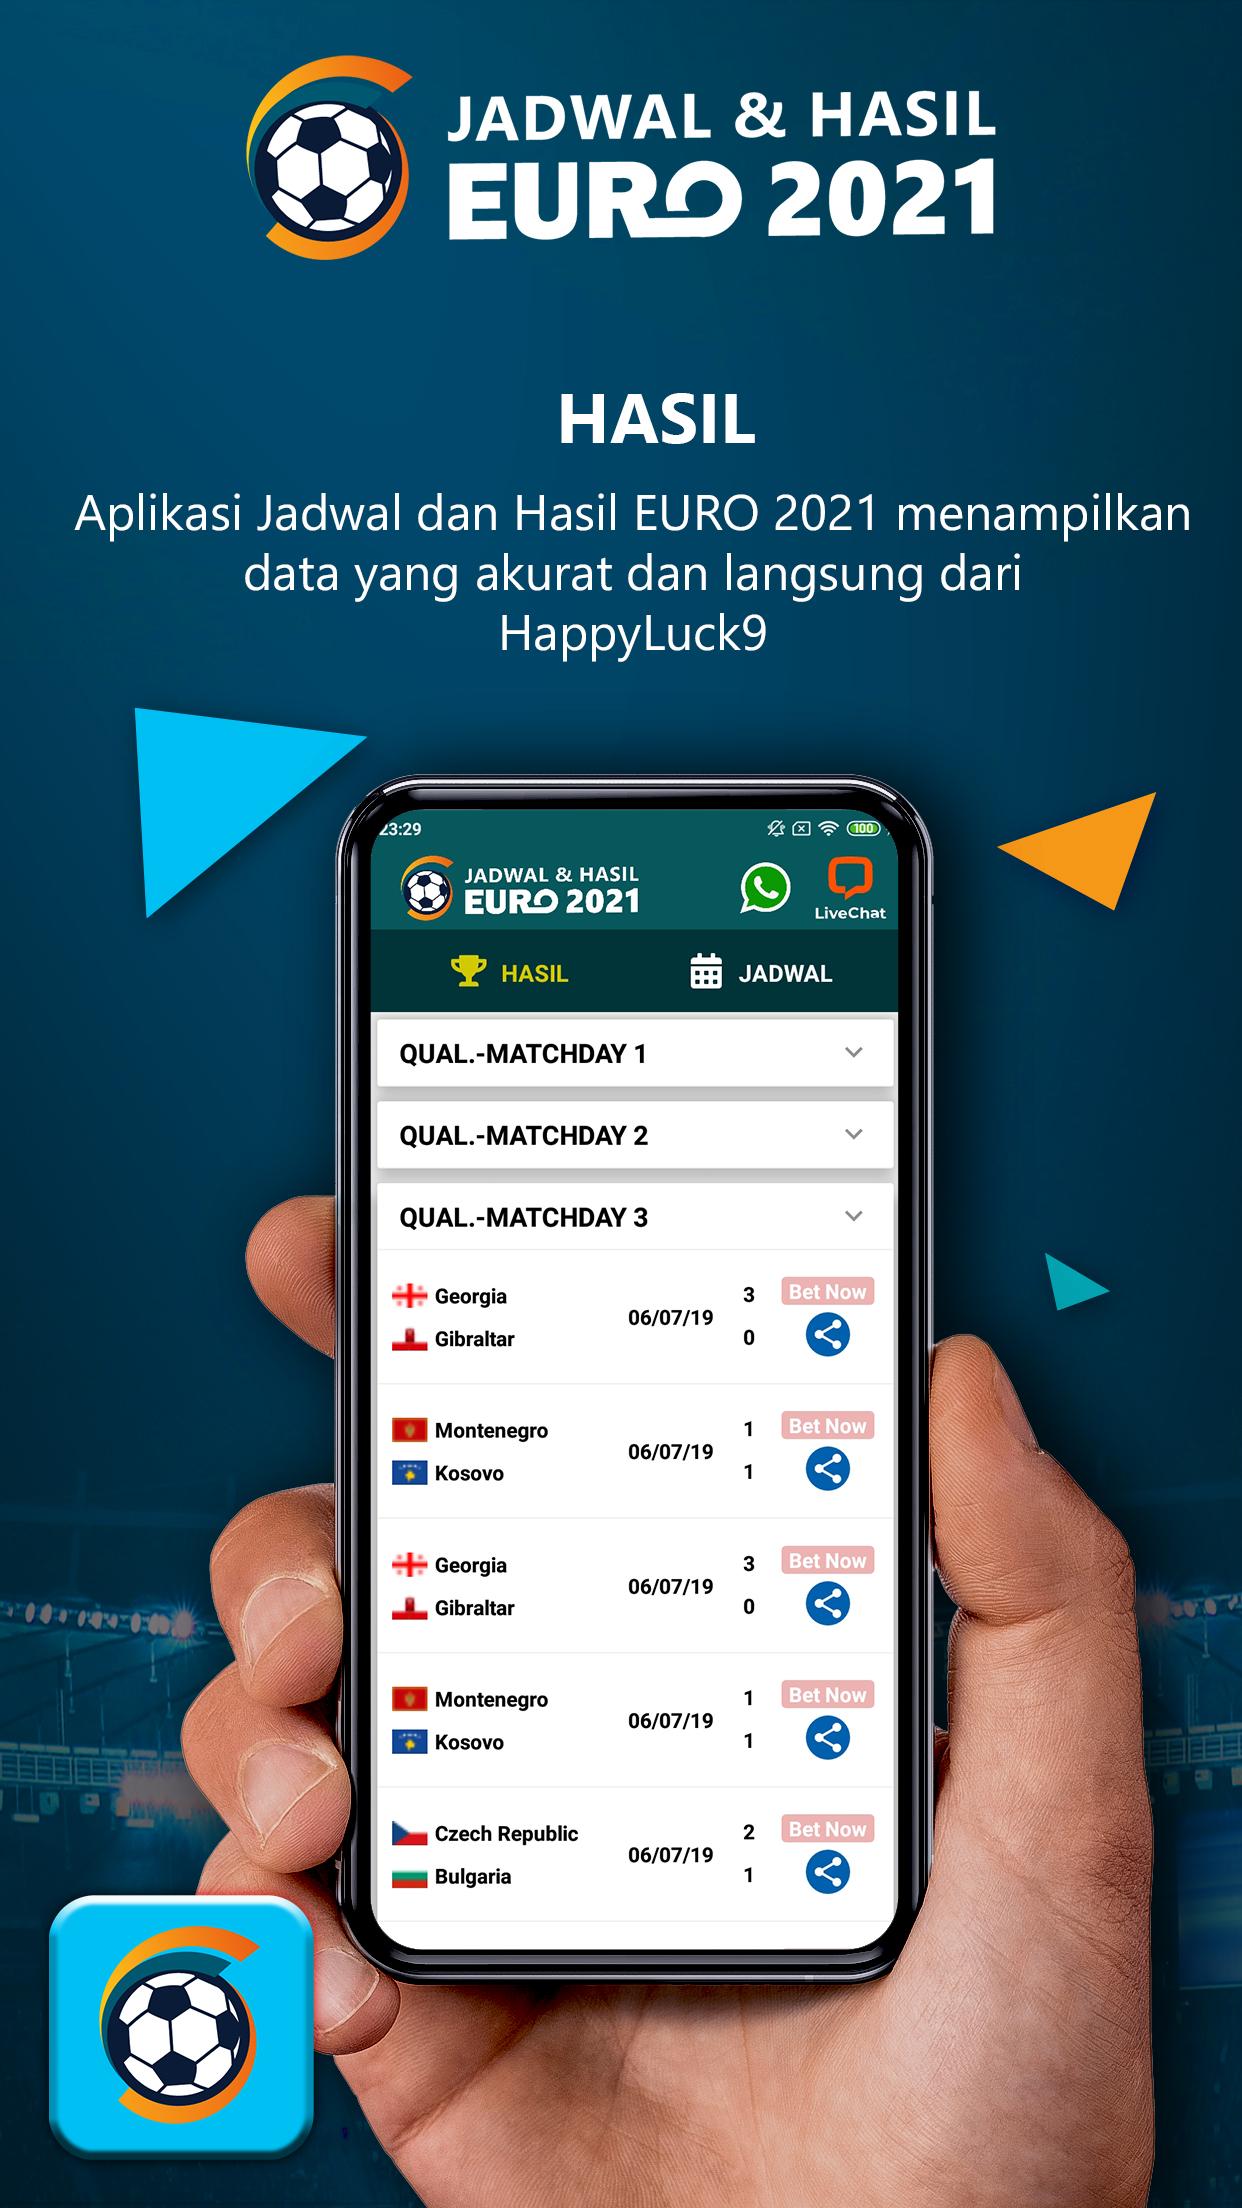 Jadwal & Hasil EURO 2021 1.0.8 Screenshot 5